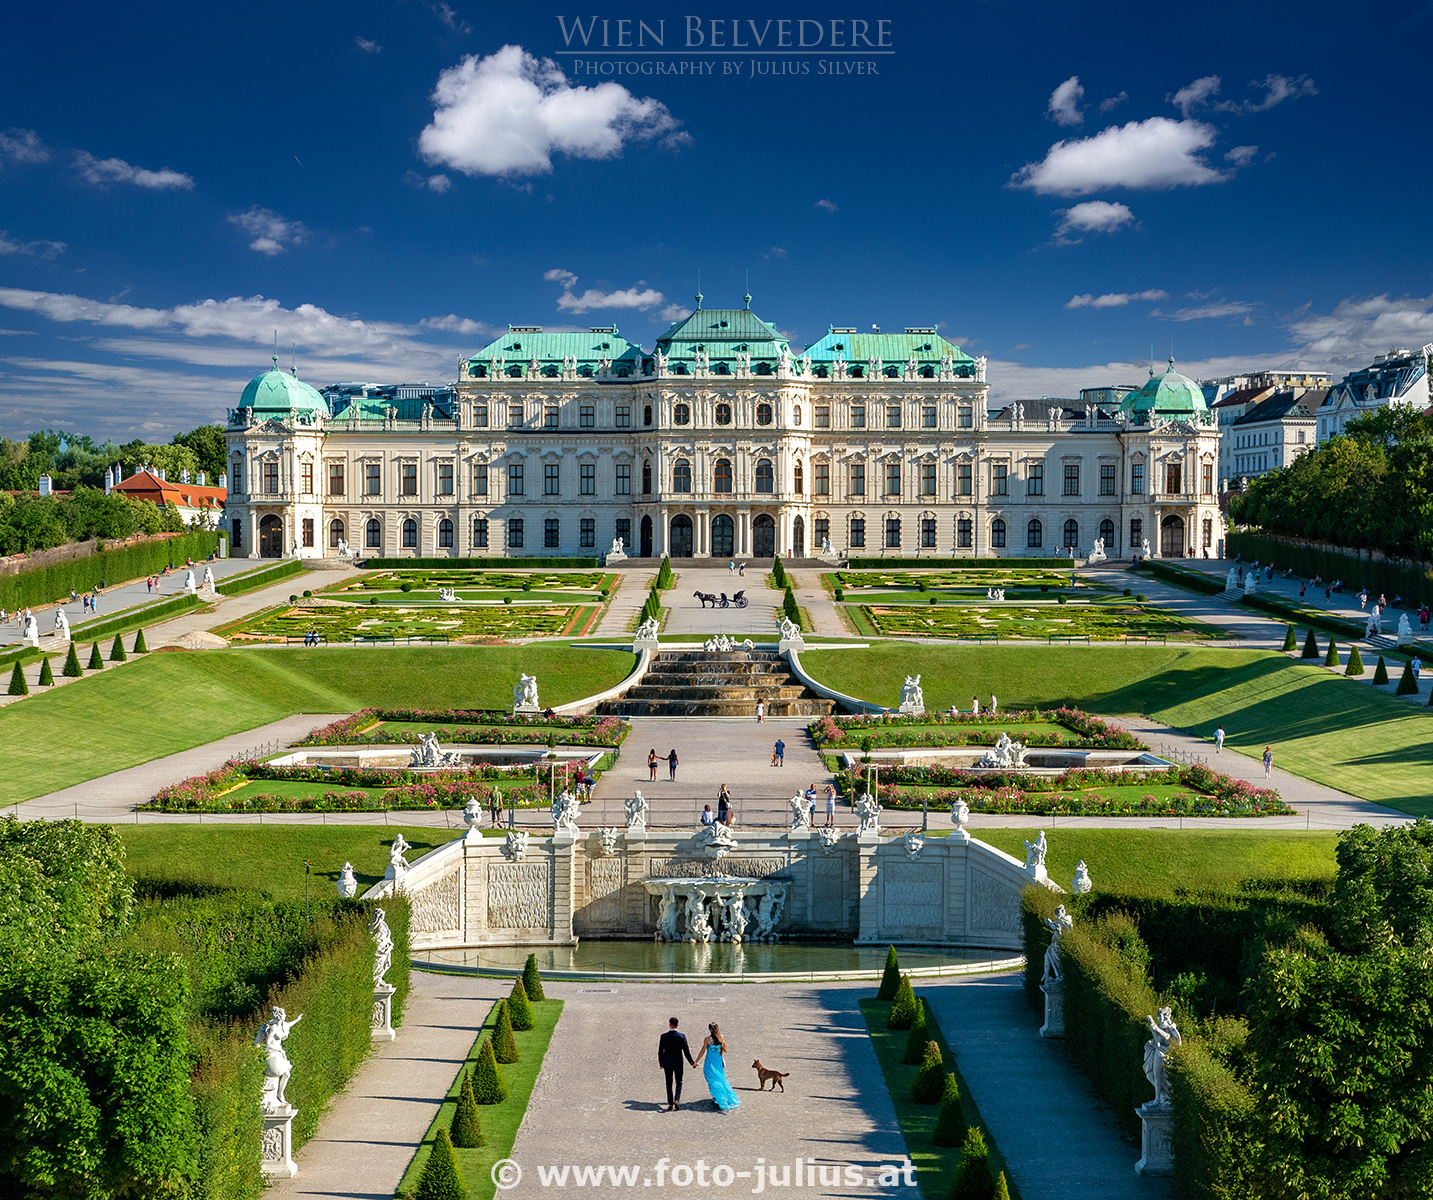 W7159a_Wien_Belvedere_Schloss.jpg, 1000kB